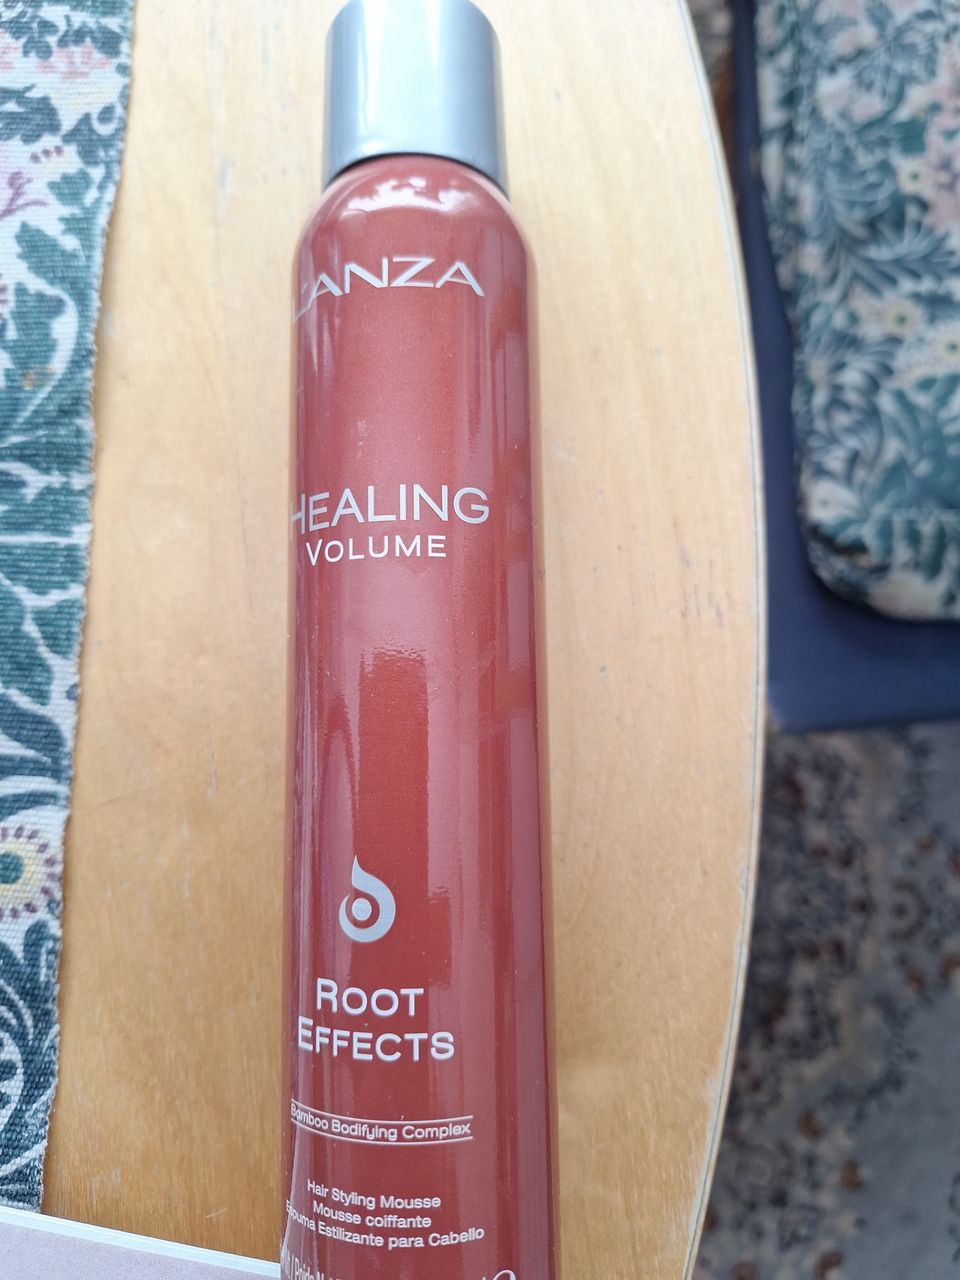 Lanza Healing Volume